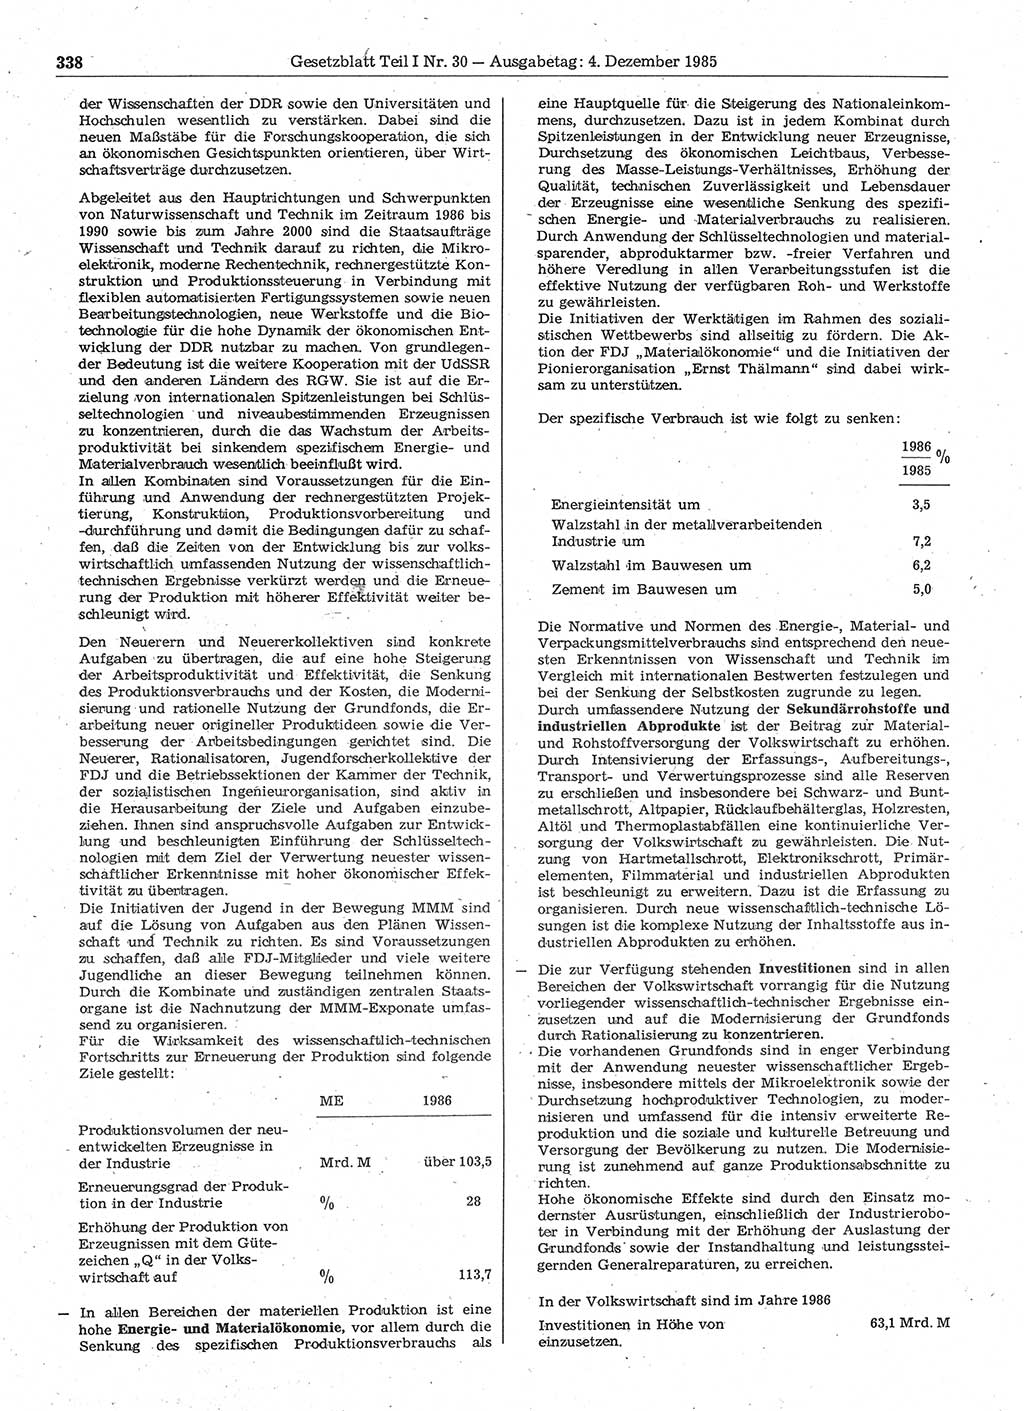 Gesetzblatt (GBl.) der Deutschen Demokratischen Republik (DDR) Teil Ⅰ 1985, Seite 338 (GBl. DDR Ⅰ 1985, S. 338)